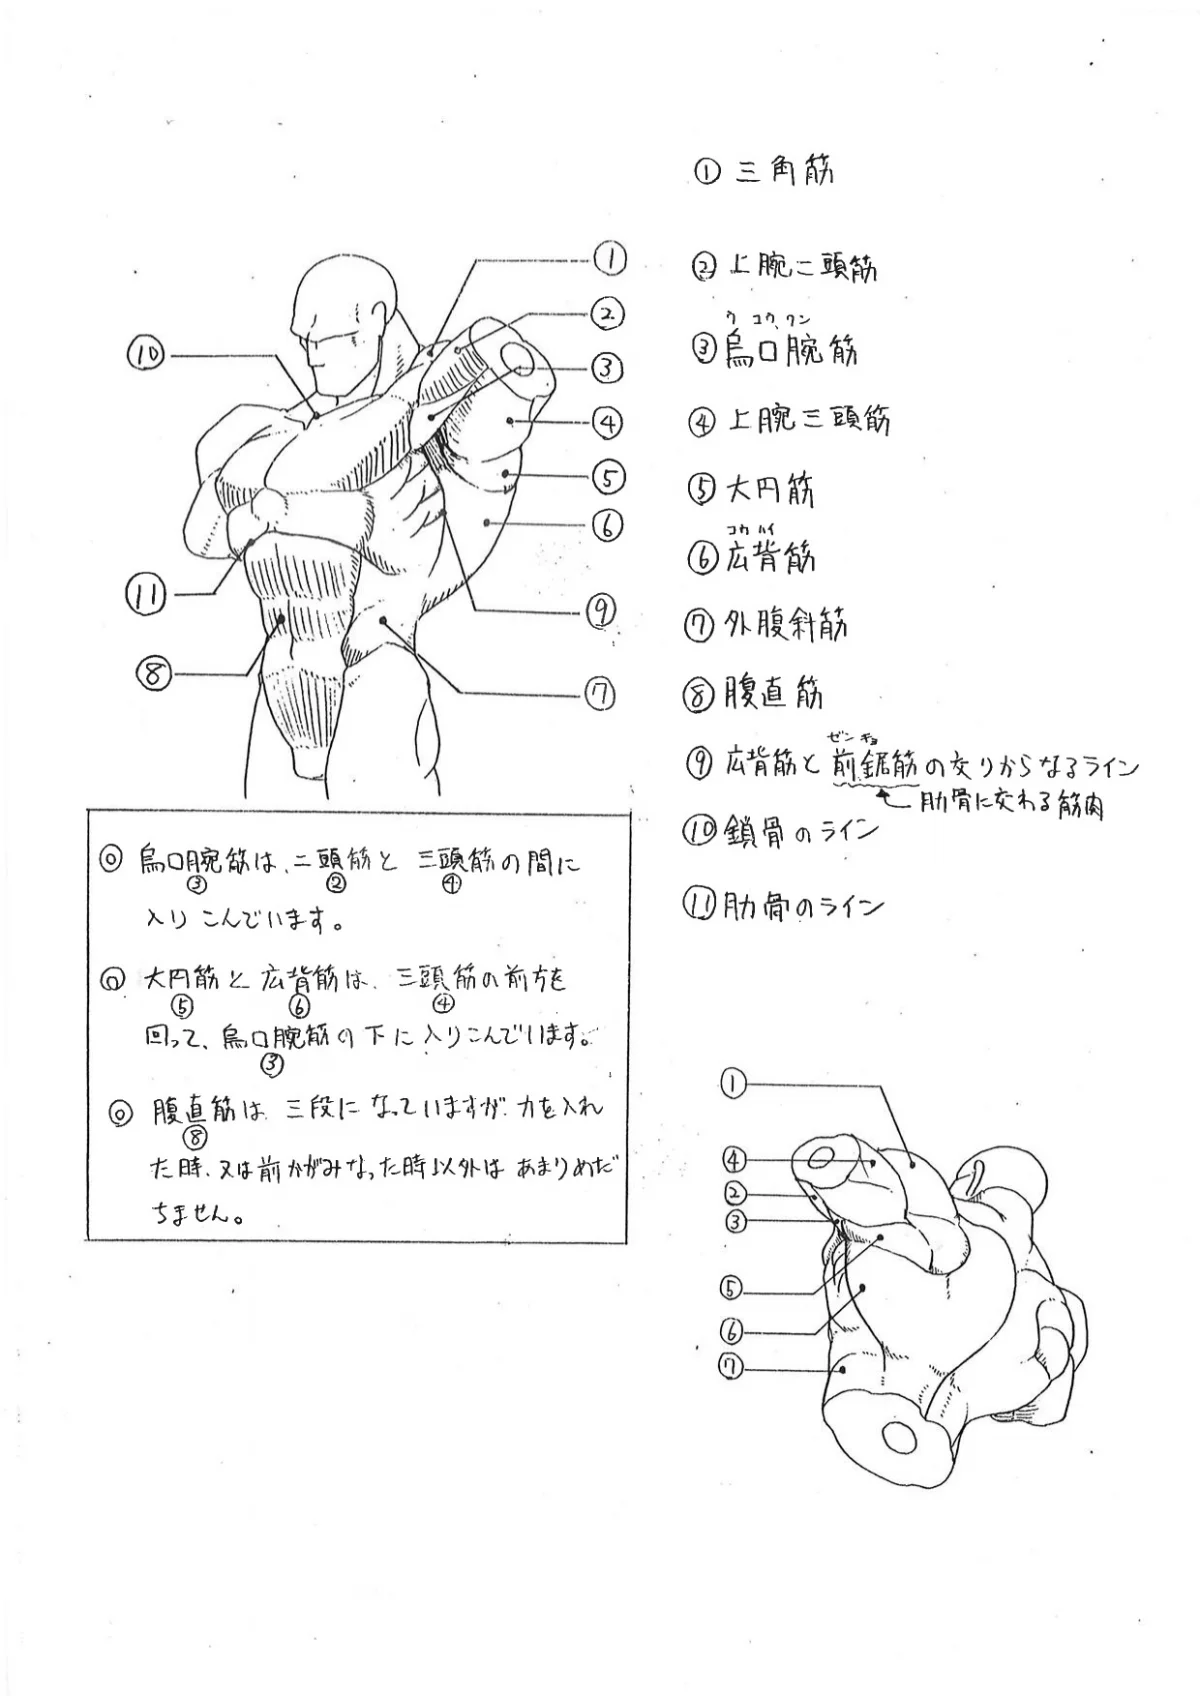 Capcom показала «шпаргалки» по анатомии для дизайнеров Street Fighter - фото 3